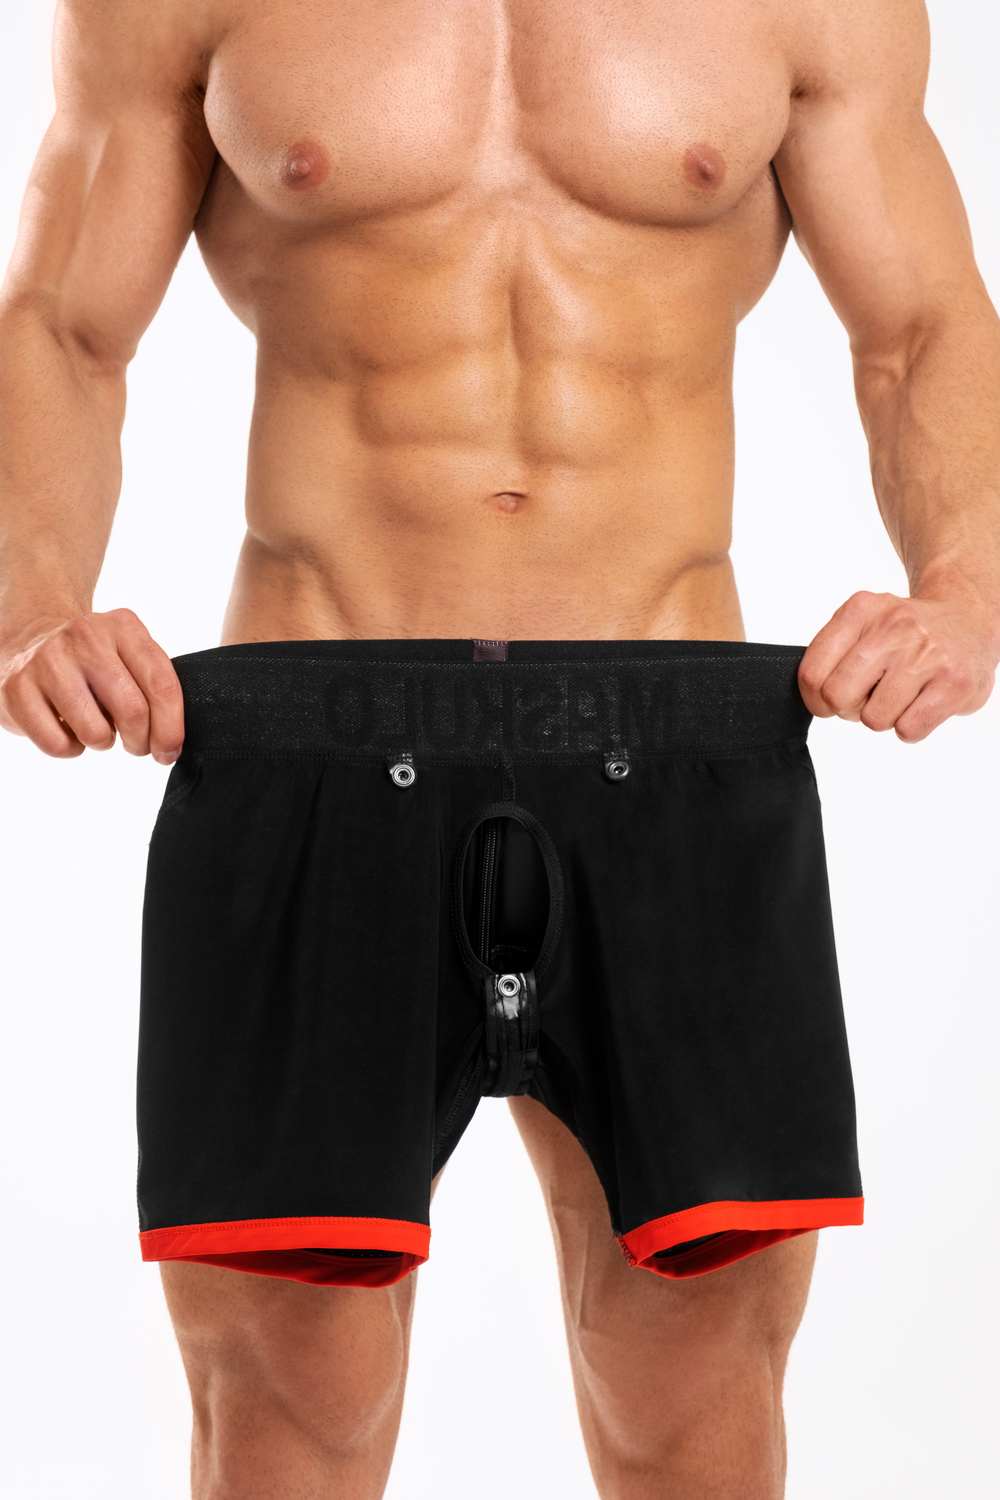 Pantalón Corto Básico con Almohadillas. Parte trasera con cremallera. Negro+Rojo